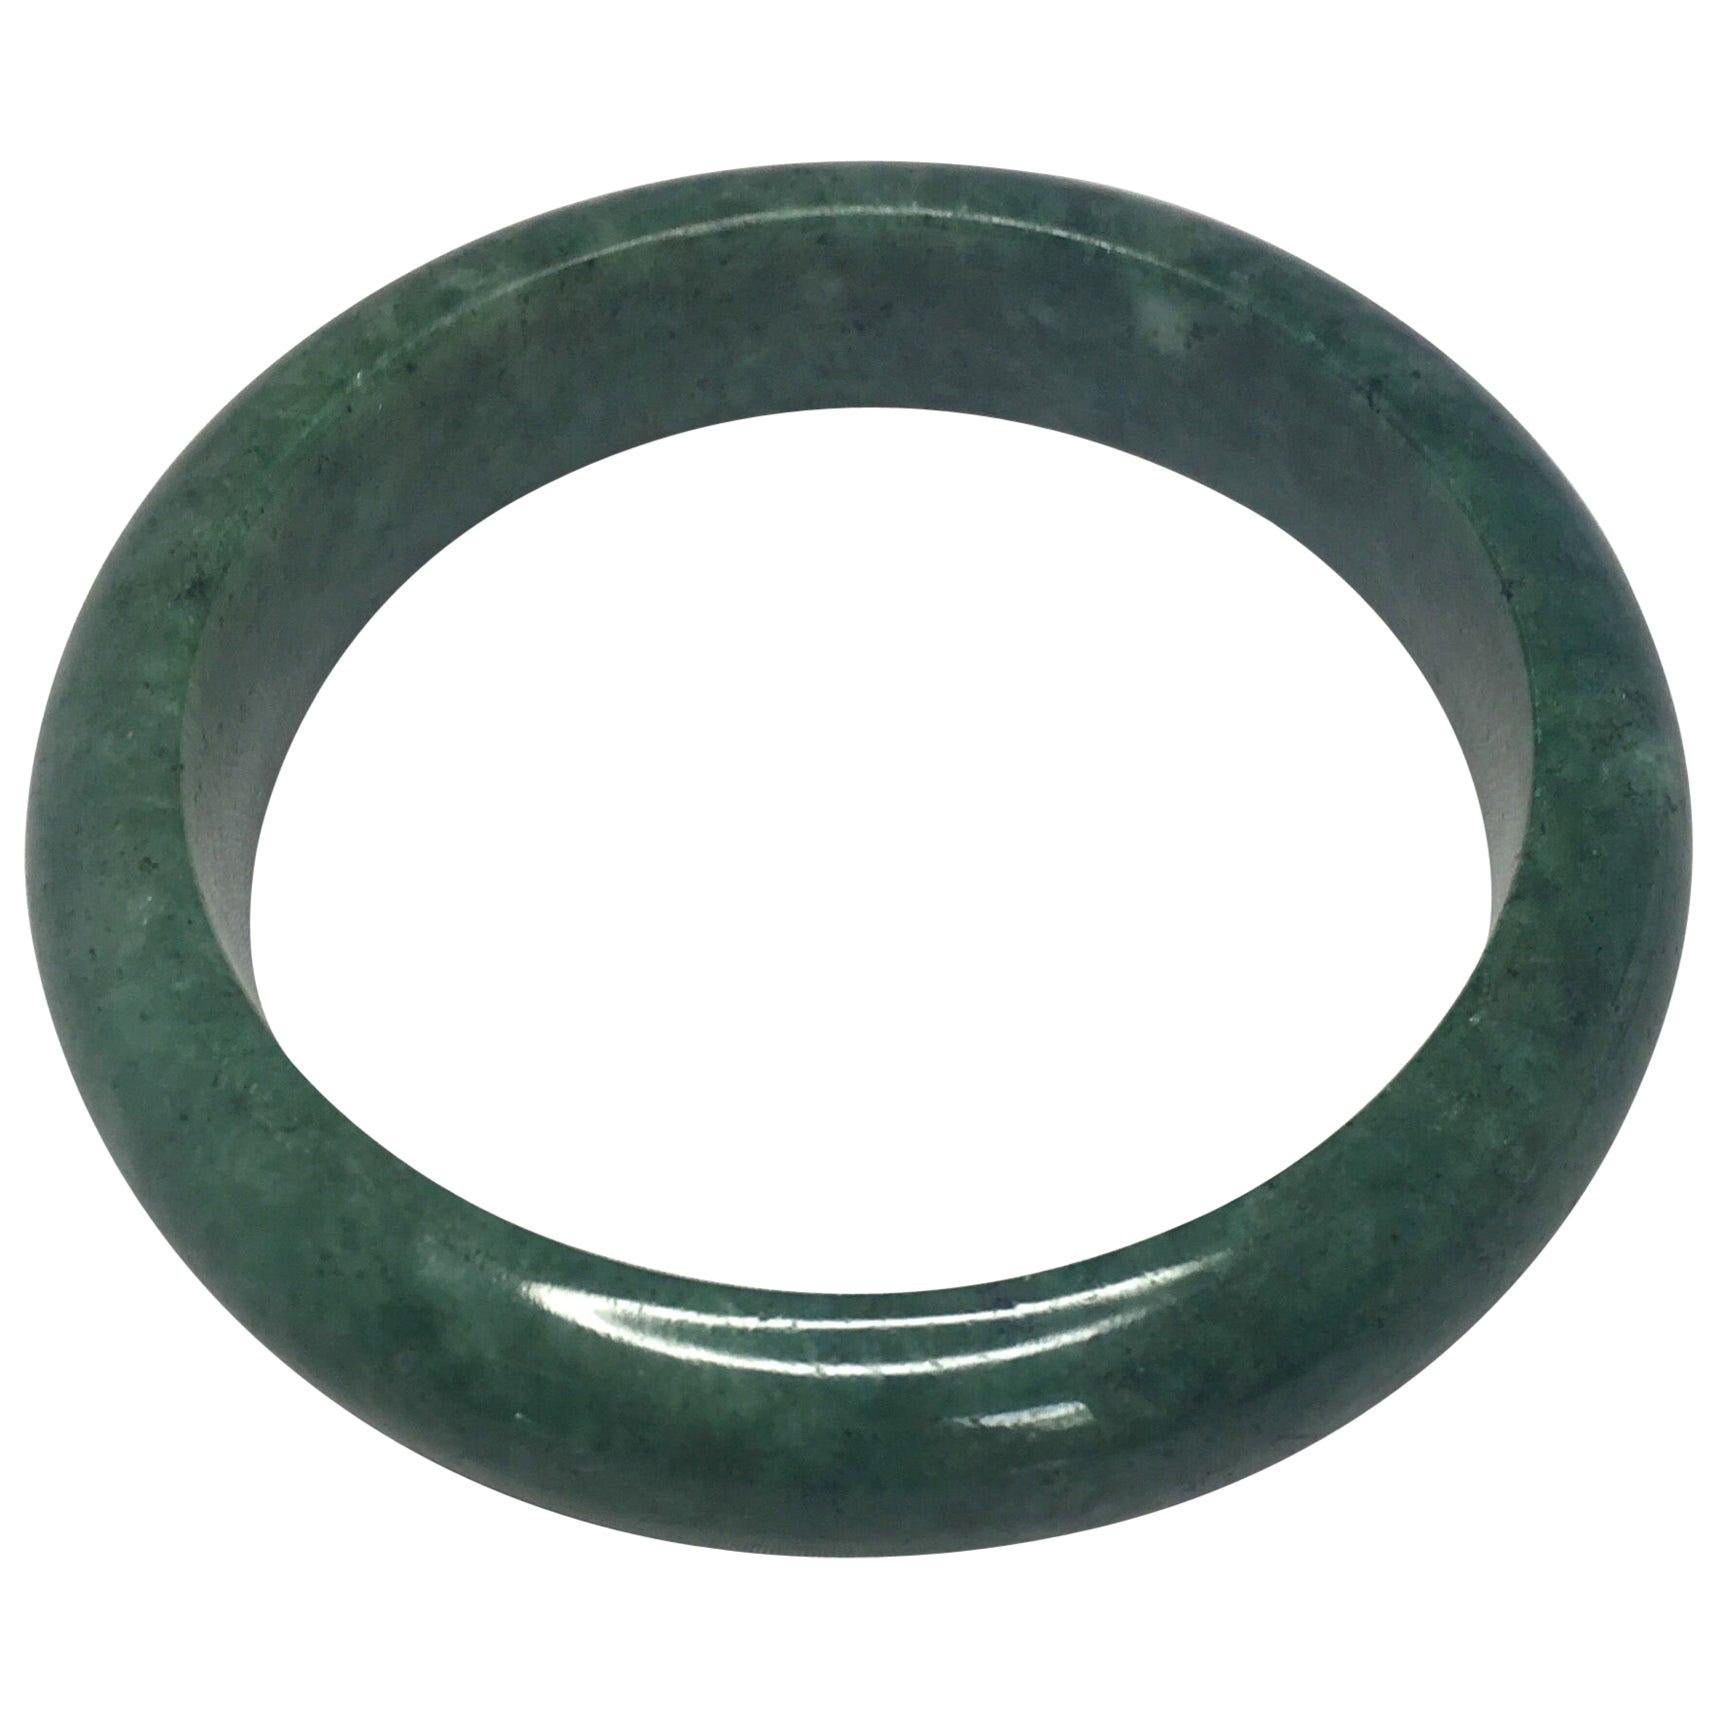 Men's Bracelet, 10mm Nephrite Jade Bracelet, 100% Authentic Natural  Canadian Nephrite Jade Beads, Mens Green Jade Bracelet, Gift for Husband -  Etsy